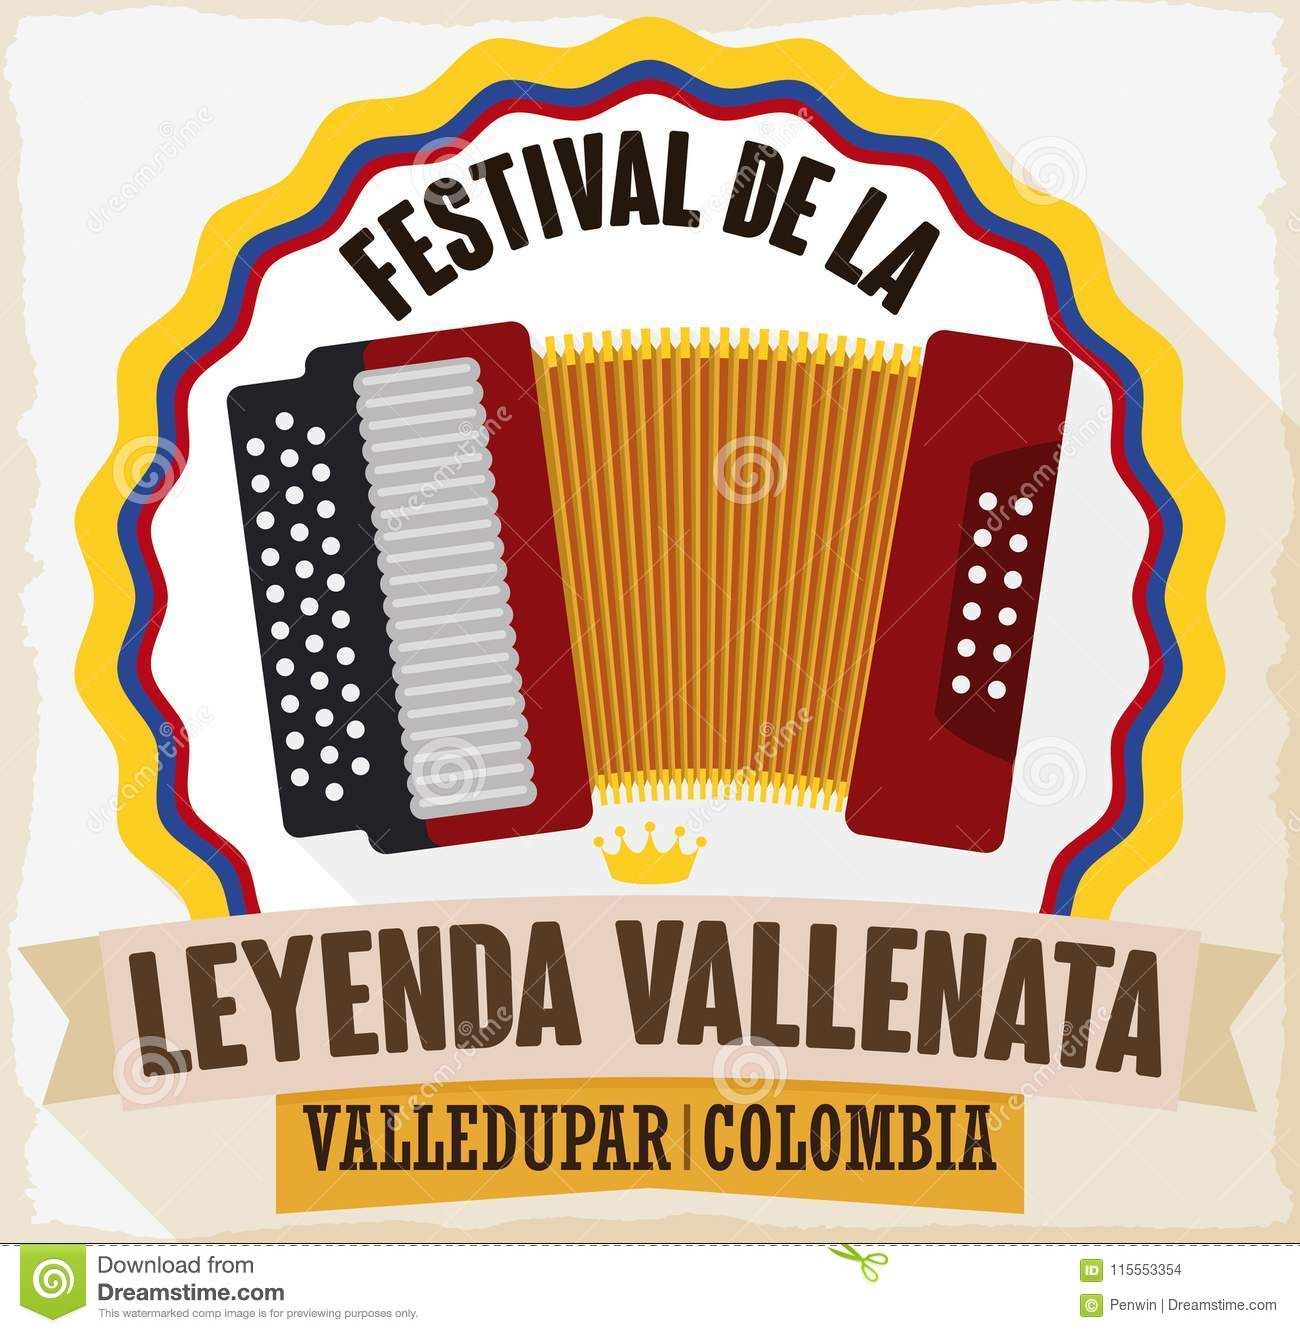 Suspenden el festival de la leyenda vallenata por aumento de contagio de covid